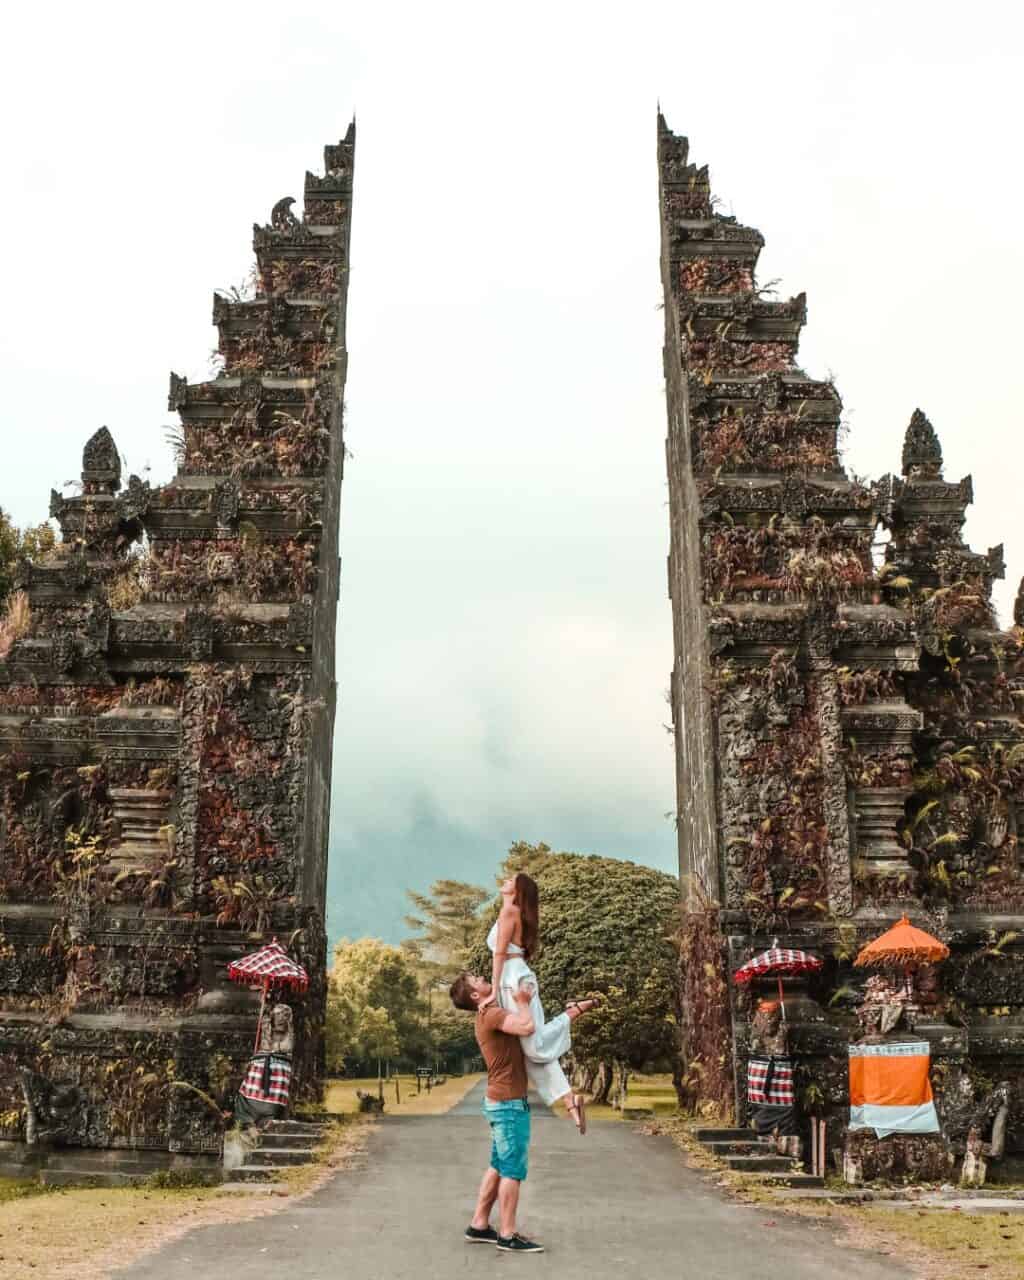 Handara Gate Bali